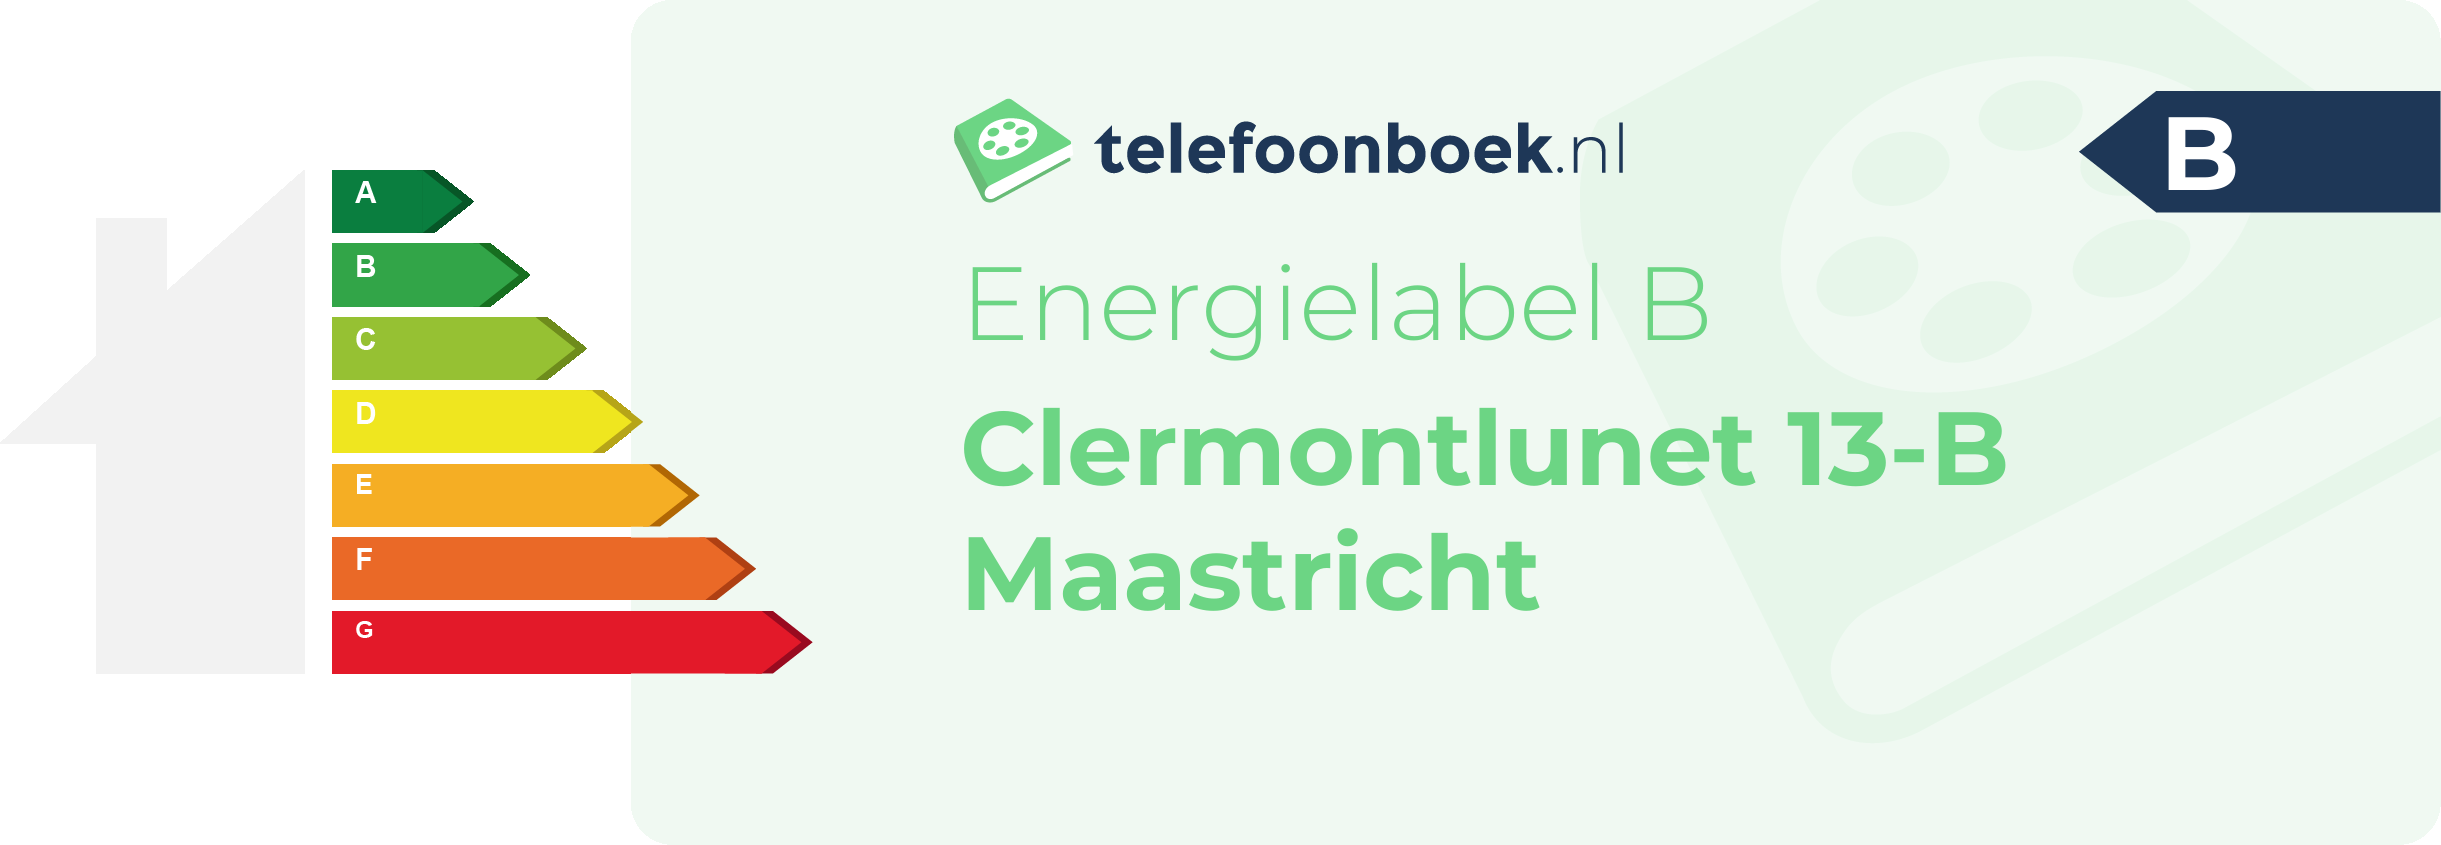 Energielabel Clermontlunet 13-B Maastricht